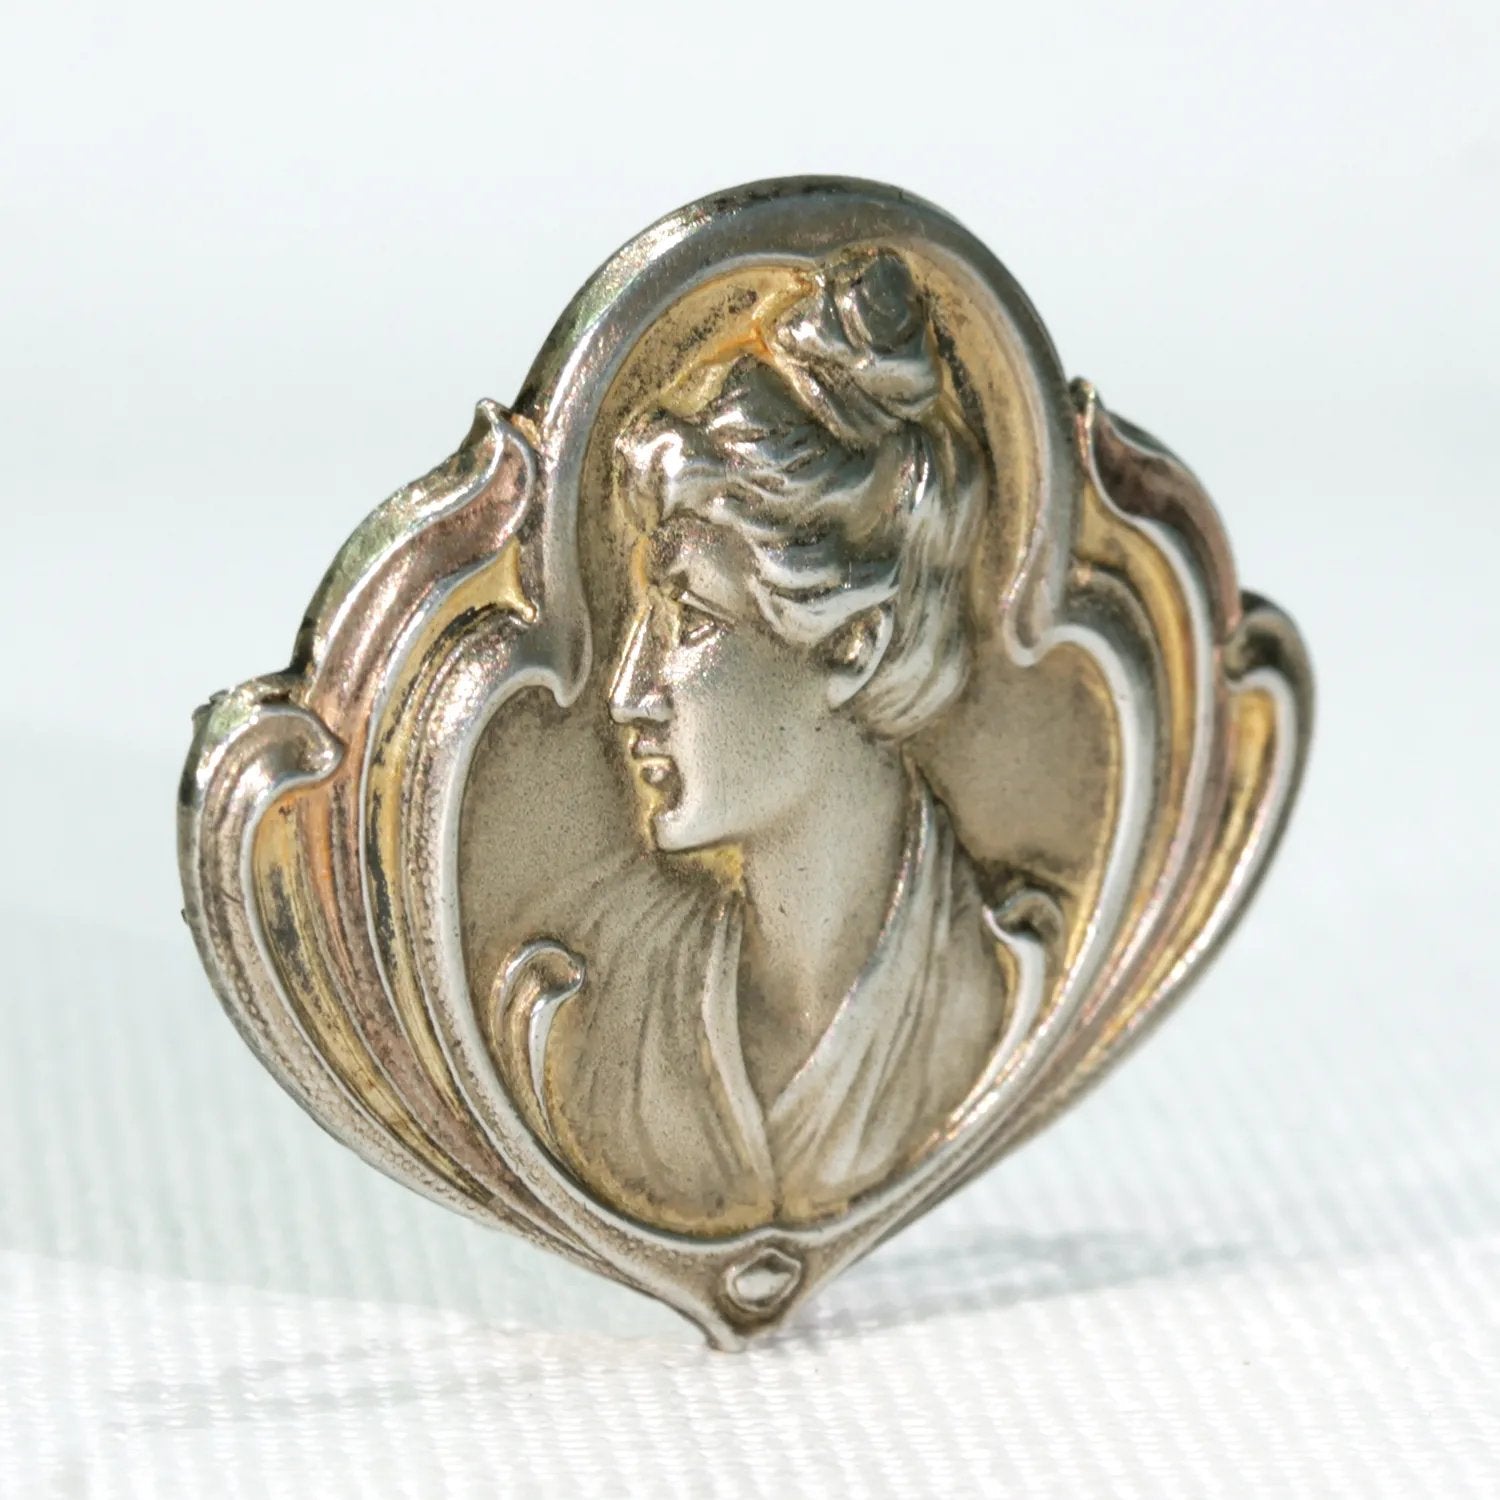 Art Nouveau Jugendstil Silver Brooch Pin Woman in Profile